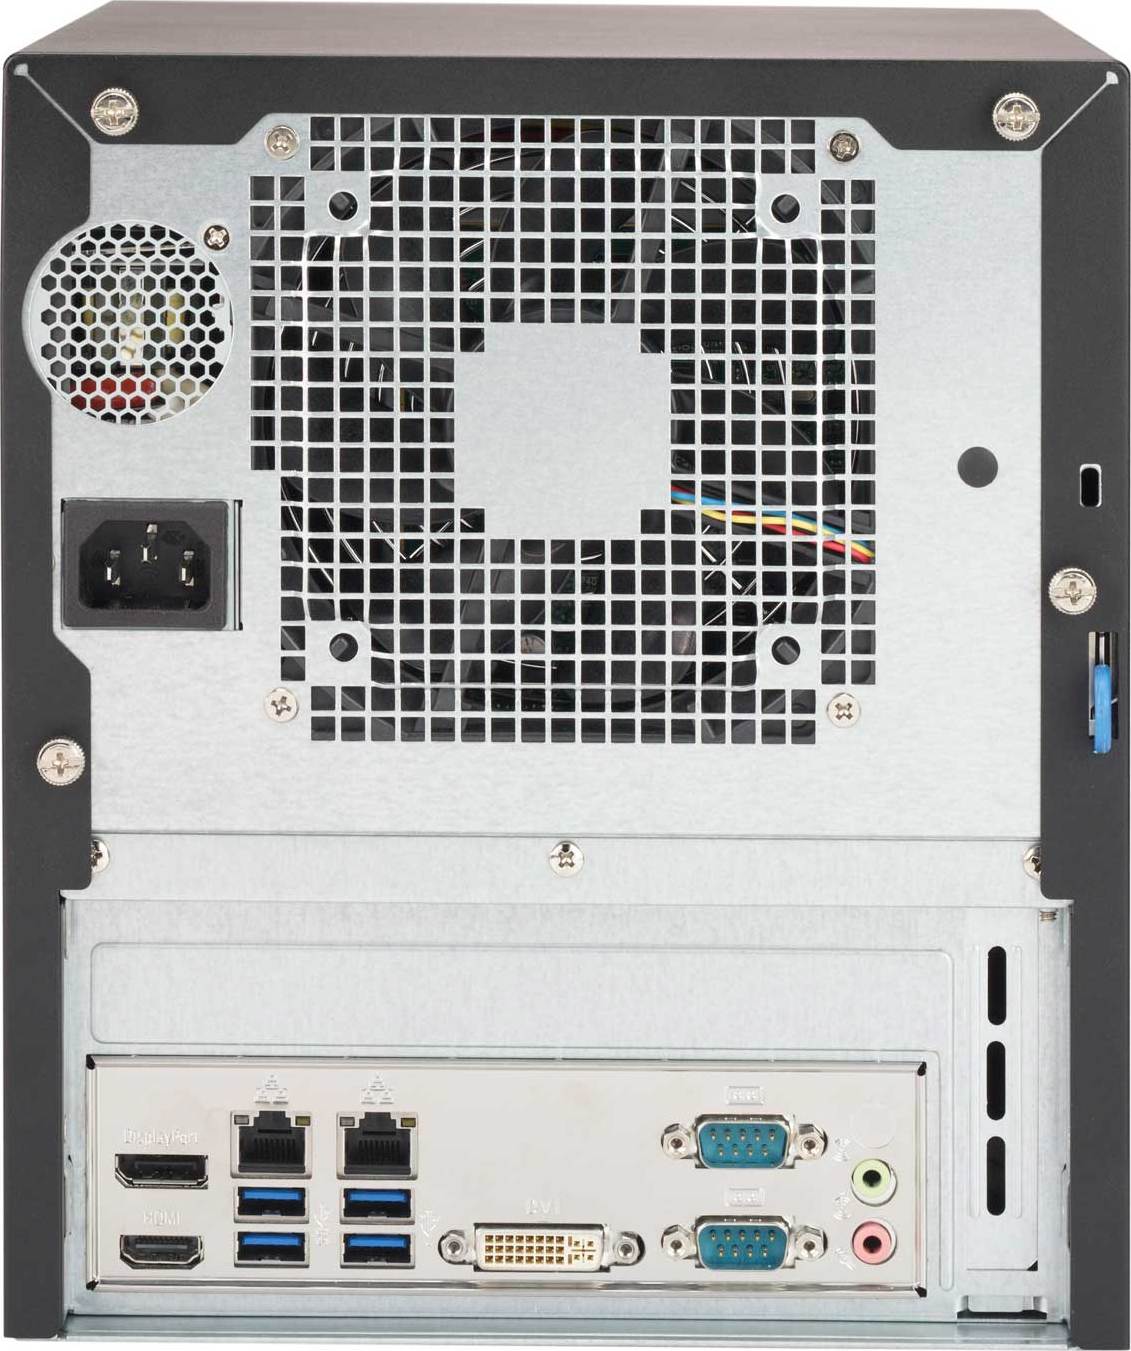 SYS-5029S-TN2 | Supermicro Intel Core-i Mini Tower Server PC